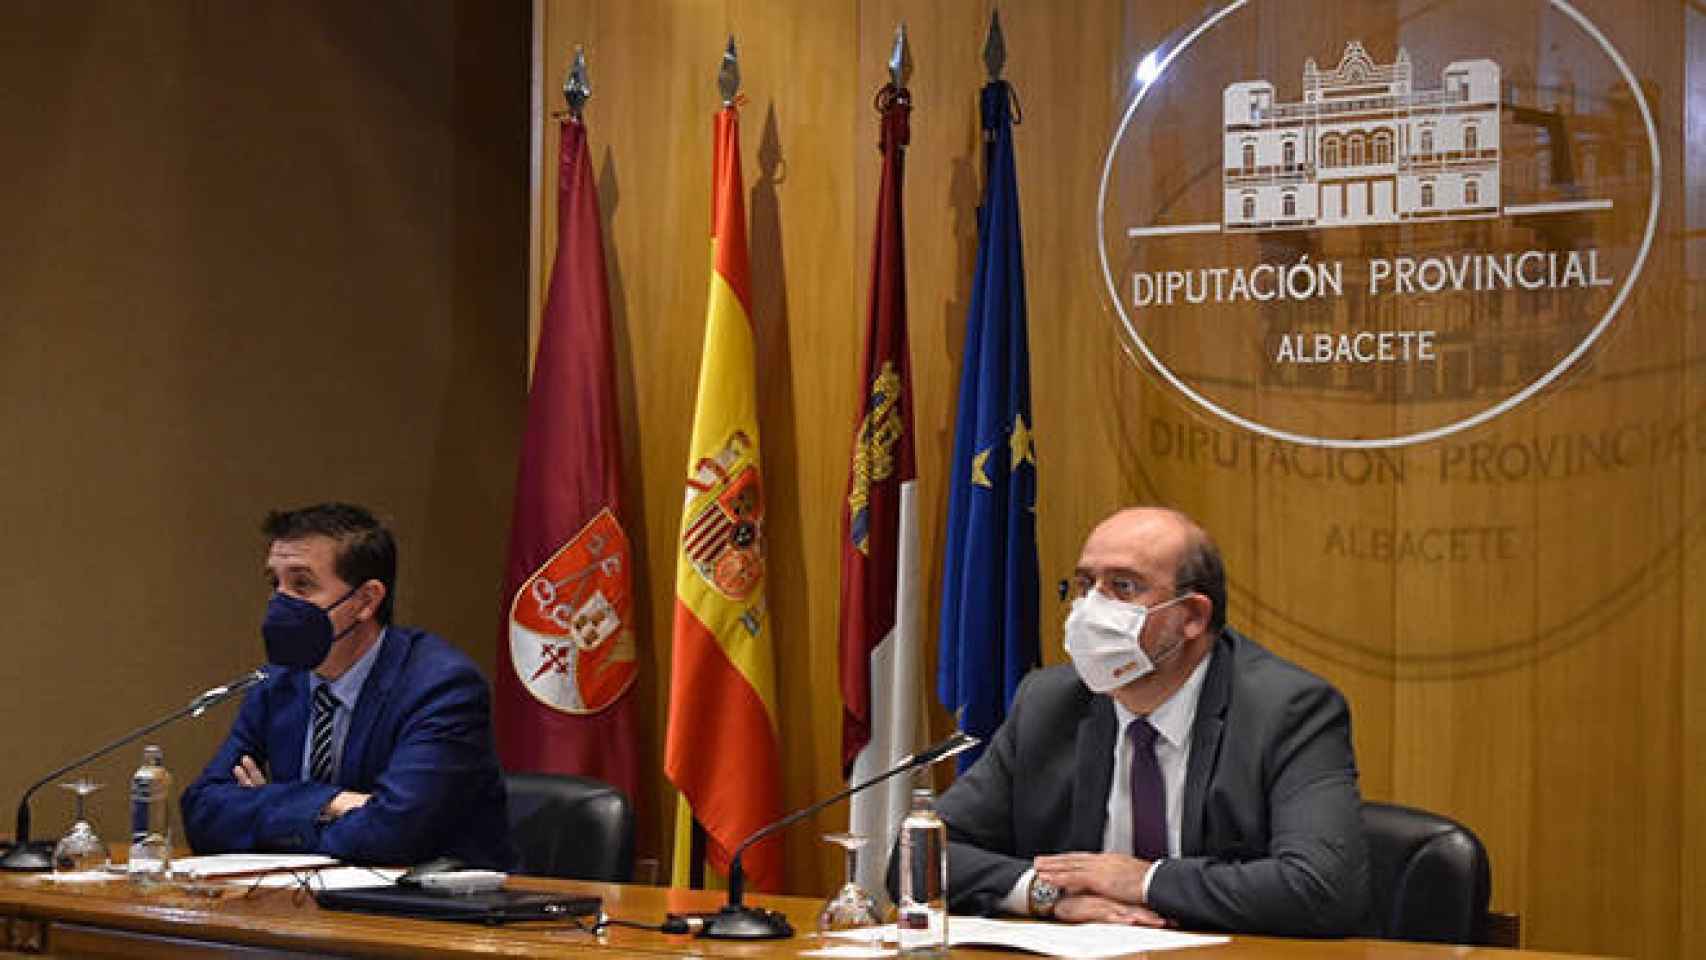 FOTO: Diputación de Albacete.